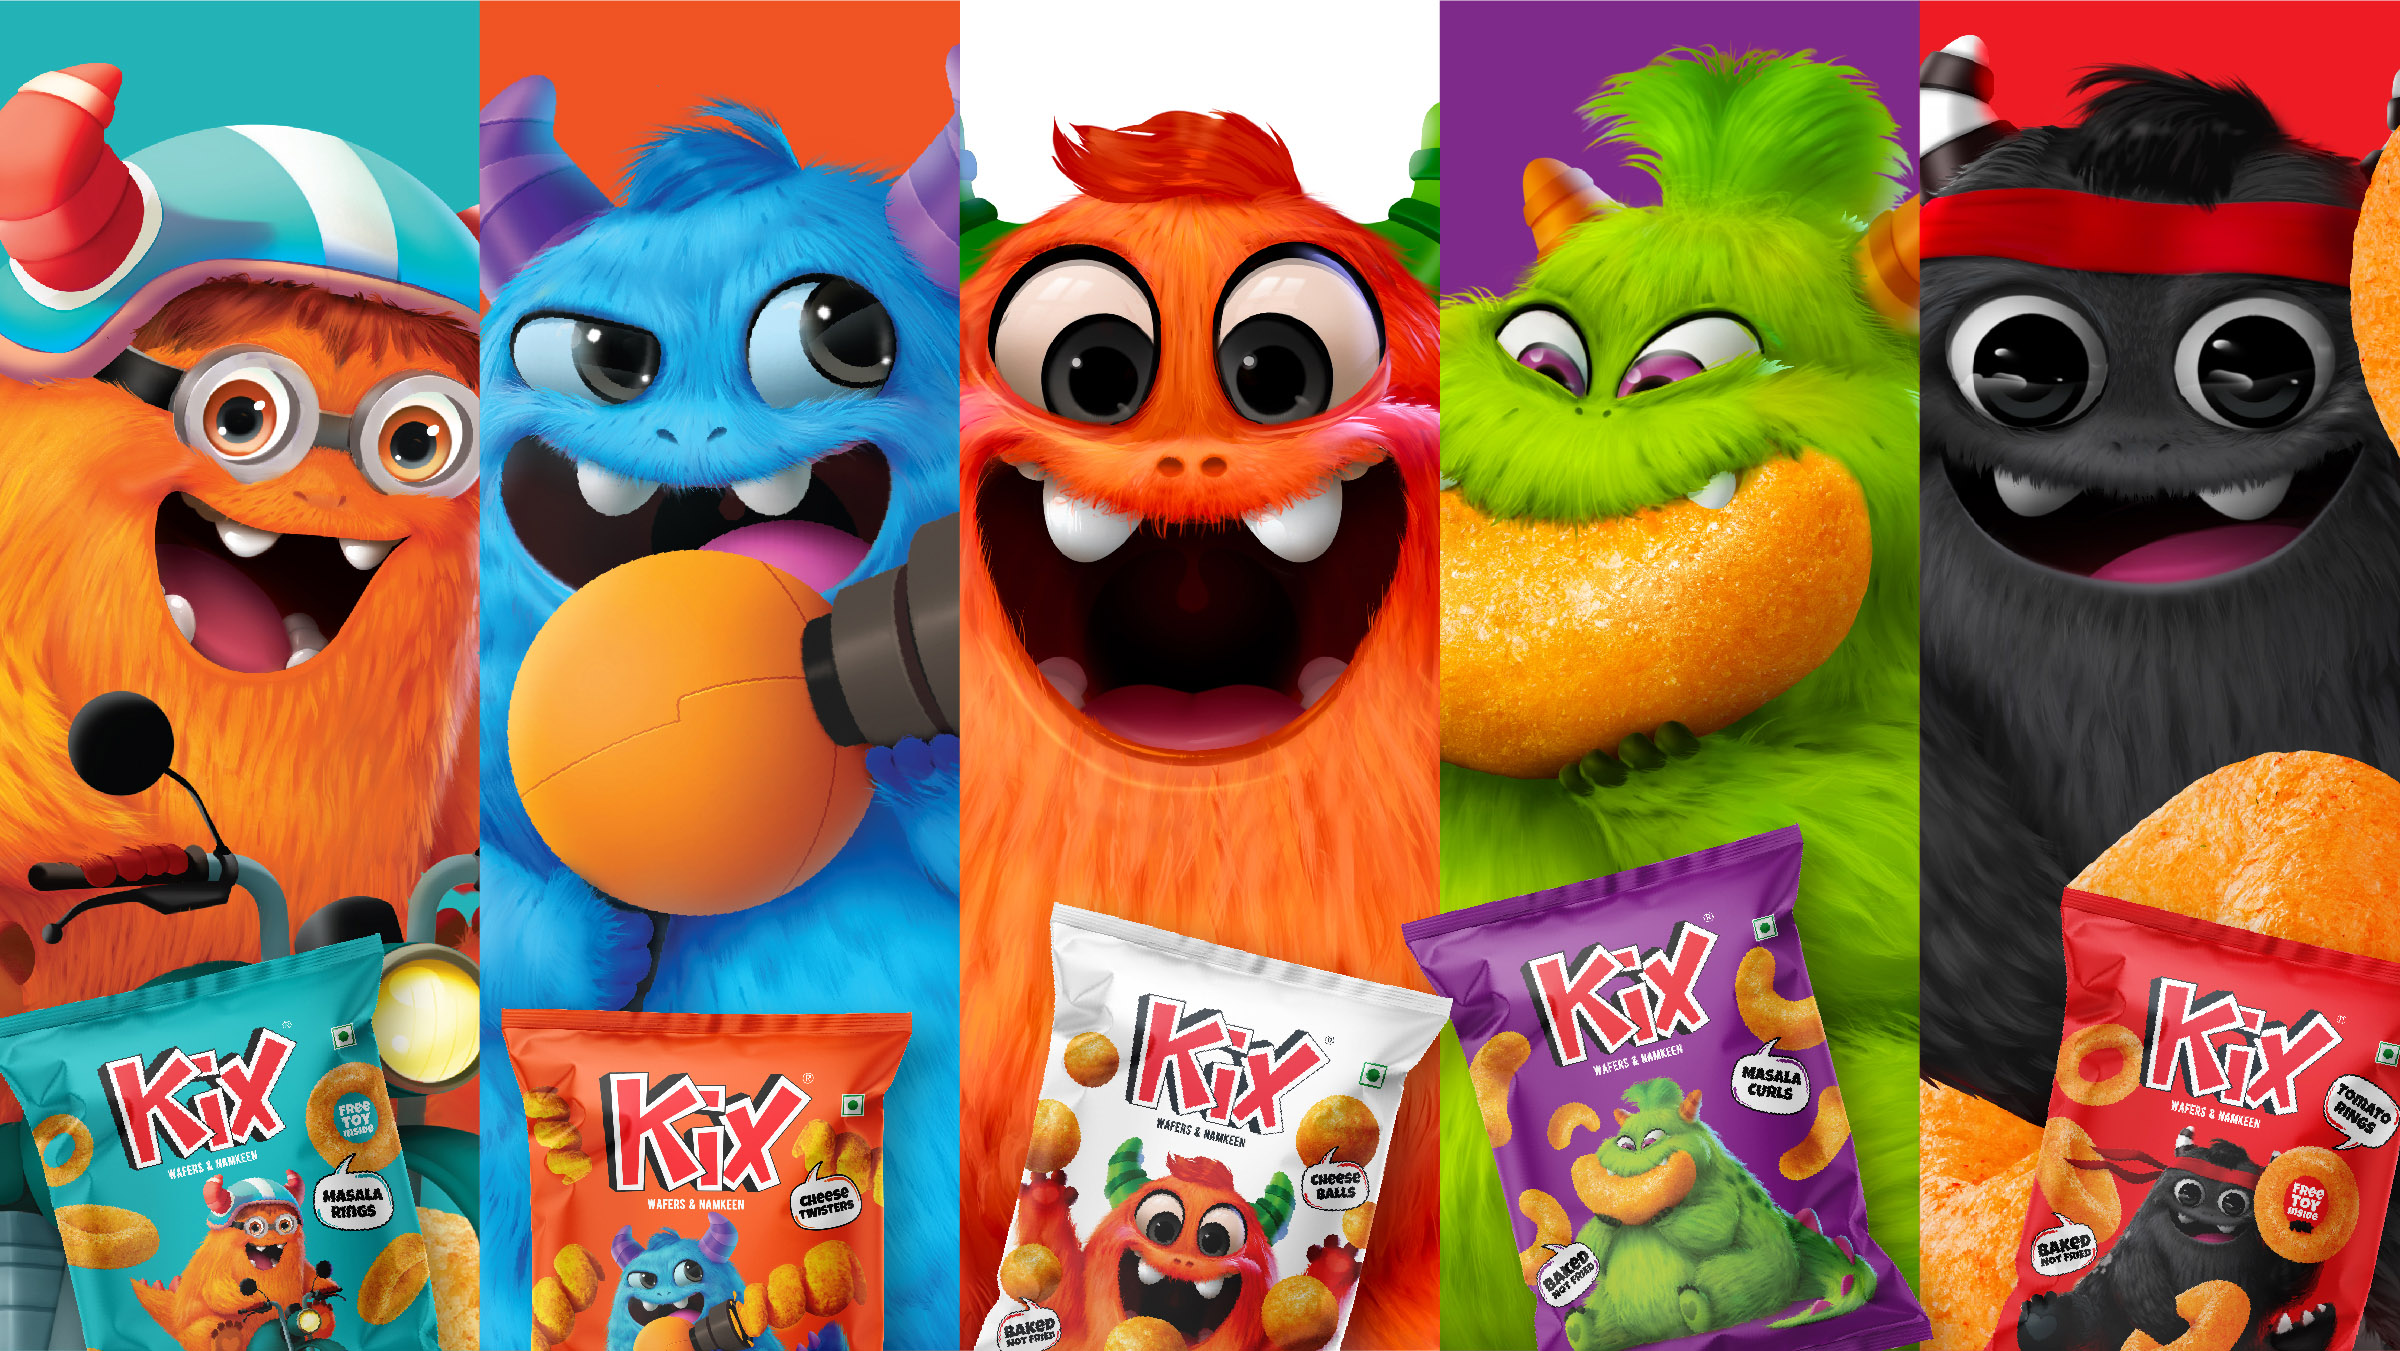 Kix Packaging and Kixters Character Design by De Icebreaker